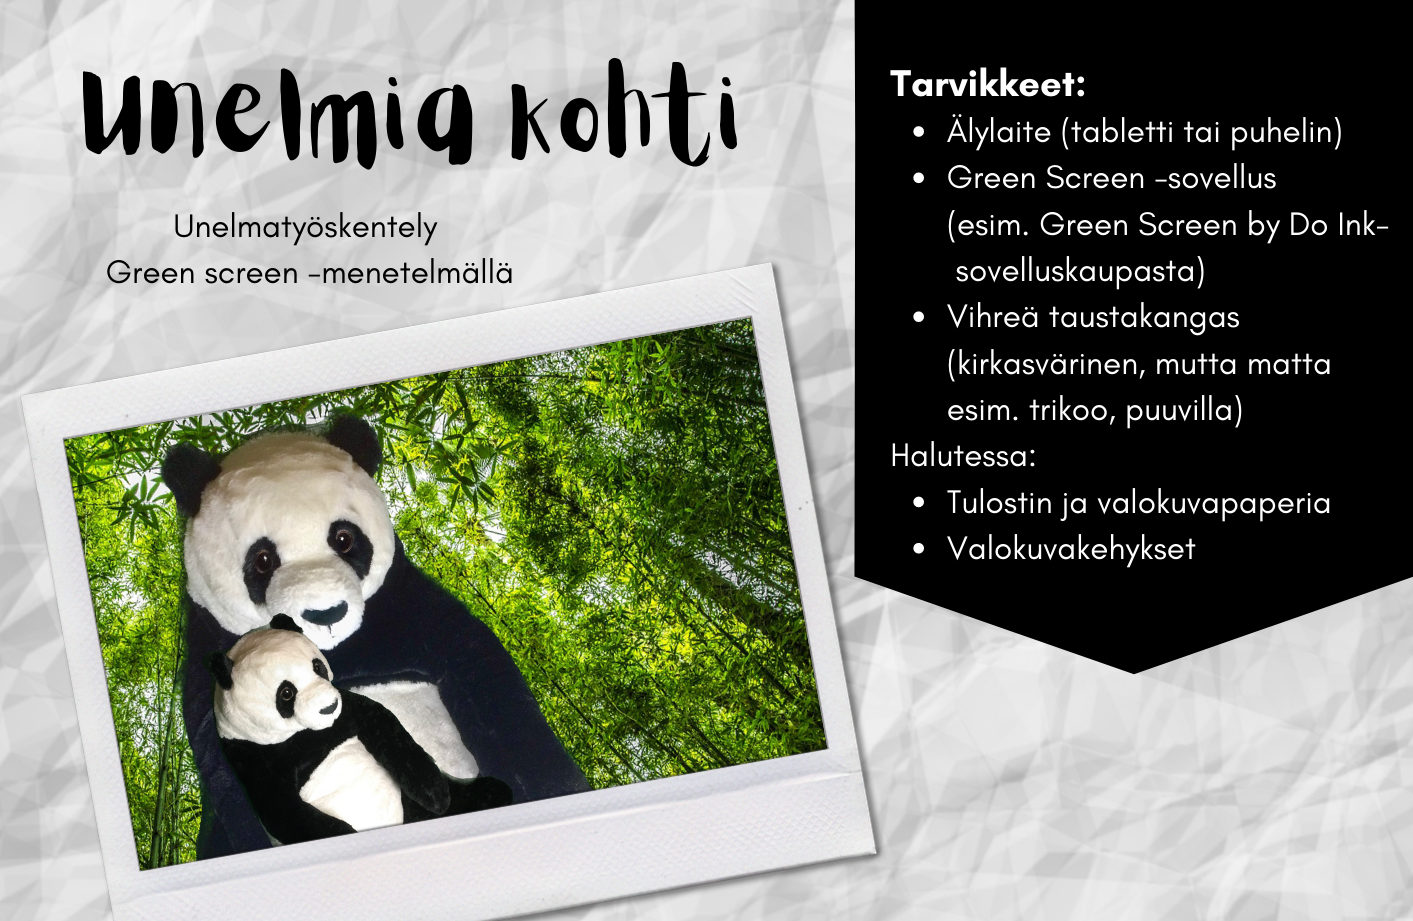 Unelmatyöskentelyssä Green screen -menetelmällä tarvikkeet listattuna tekstimuodossa, lisäksi kuva kahdesta pandasta metsässä.